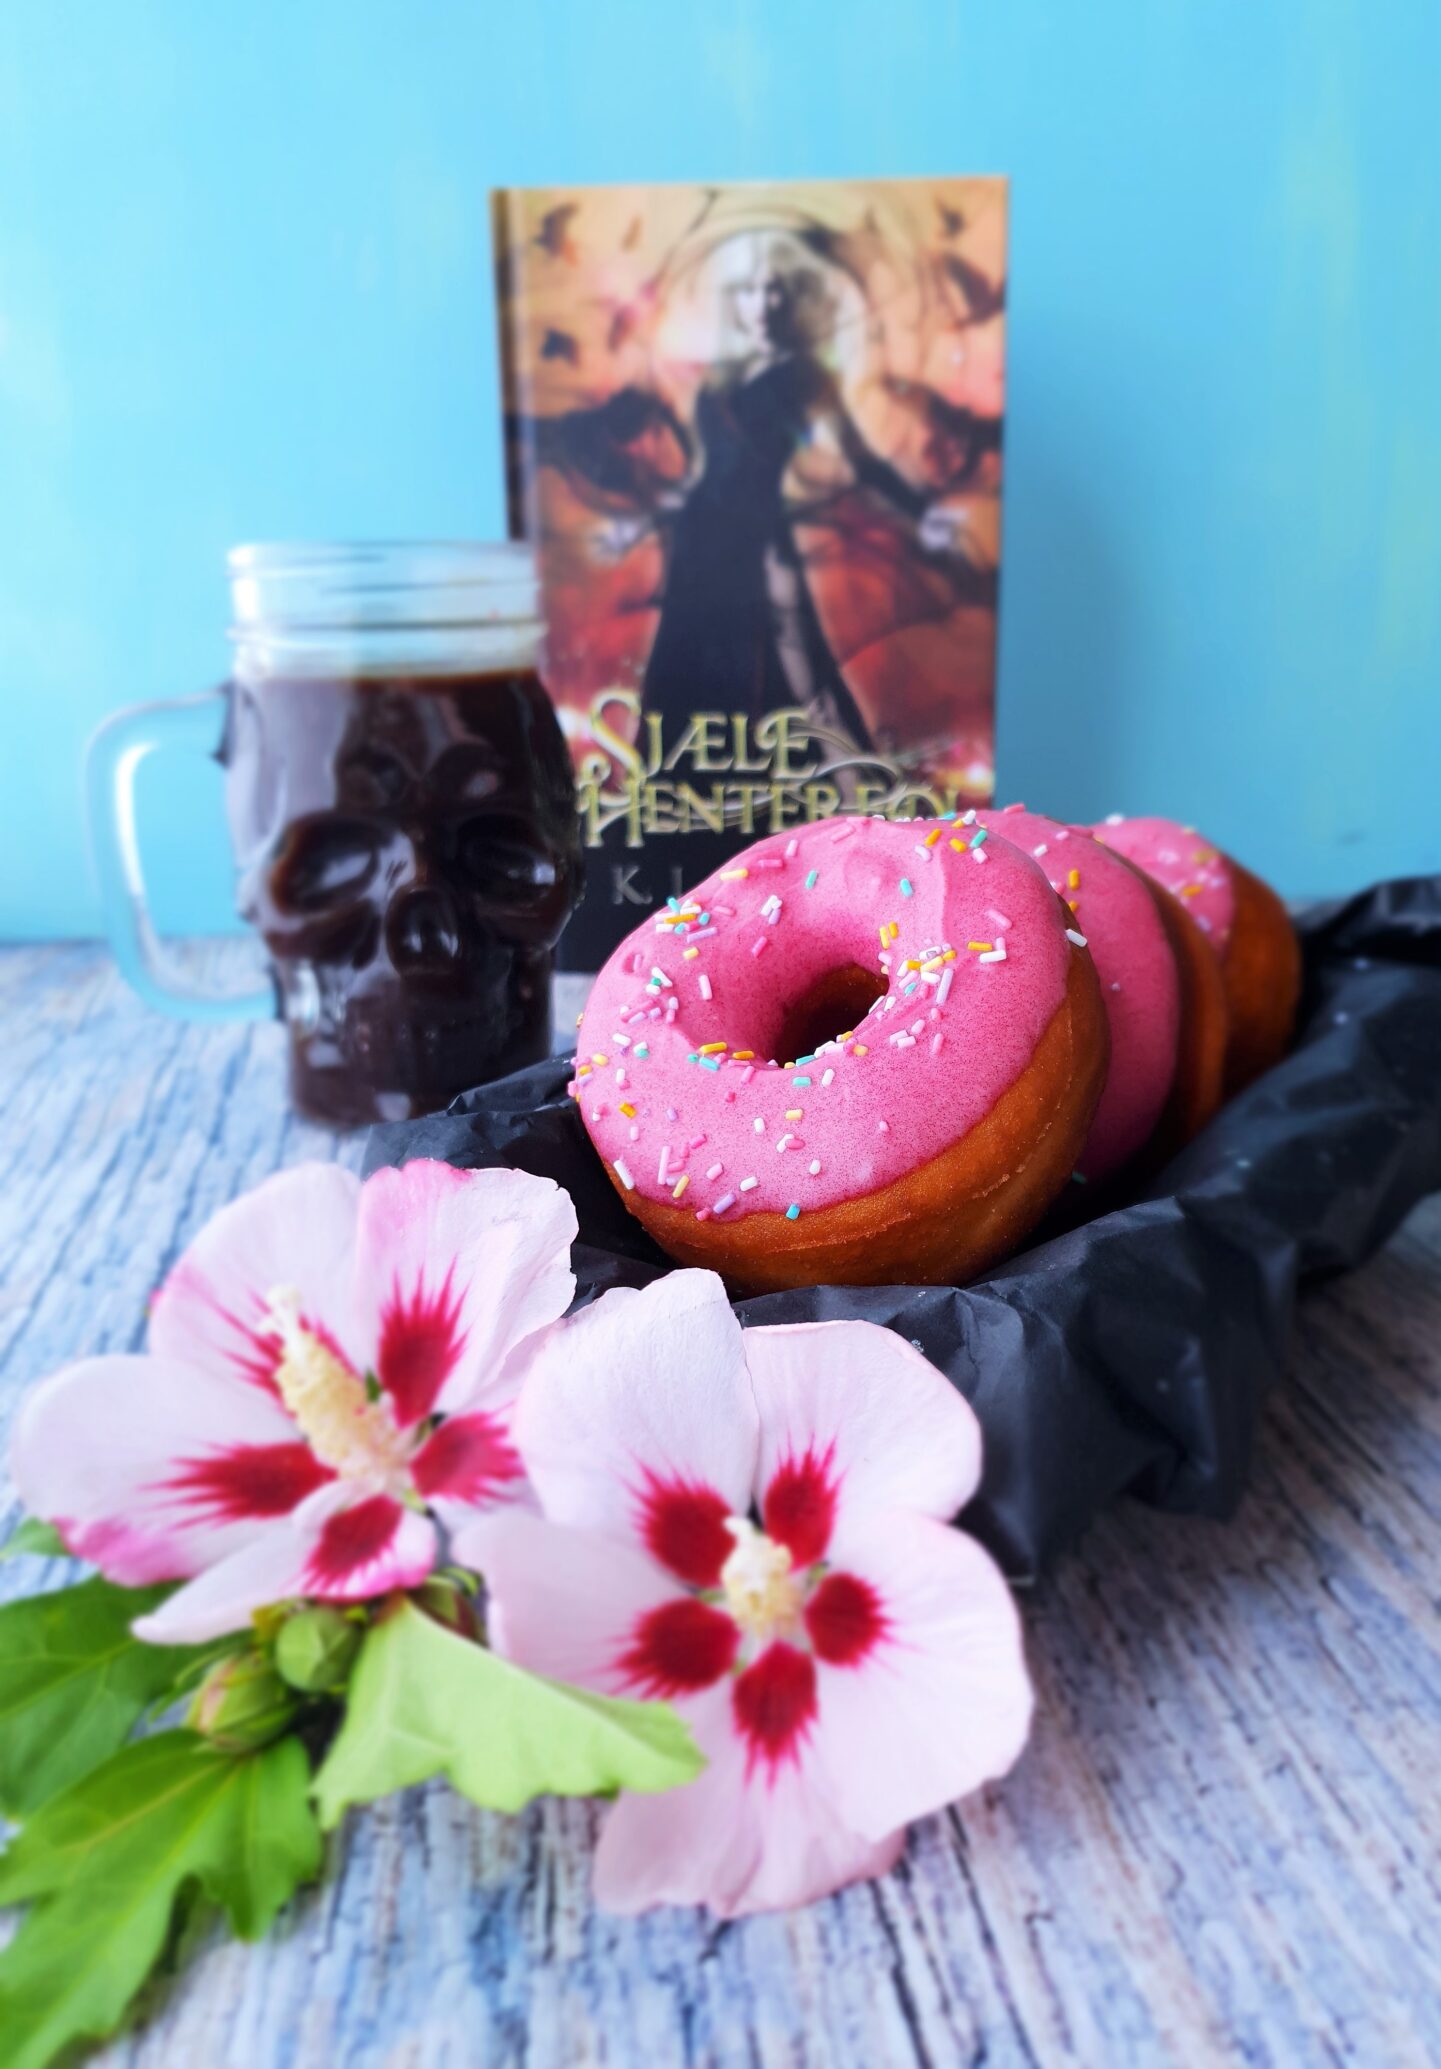 Anmeldelse: Sjælehenteren – og en opskrift på hindbær donuts